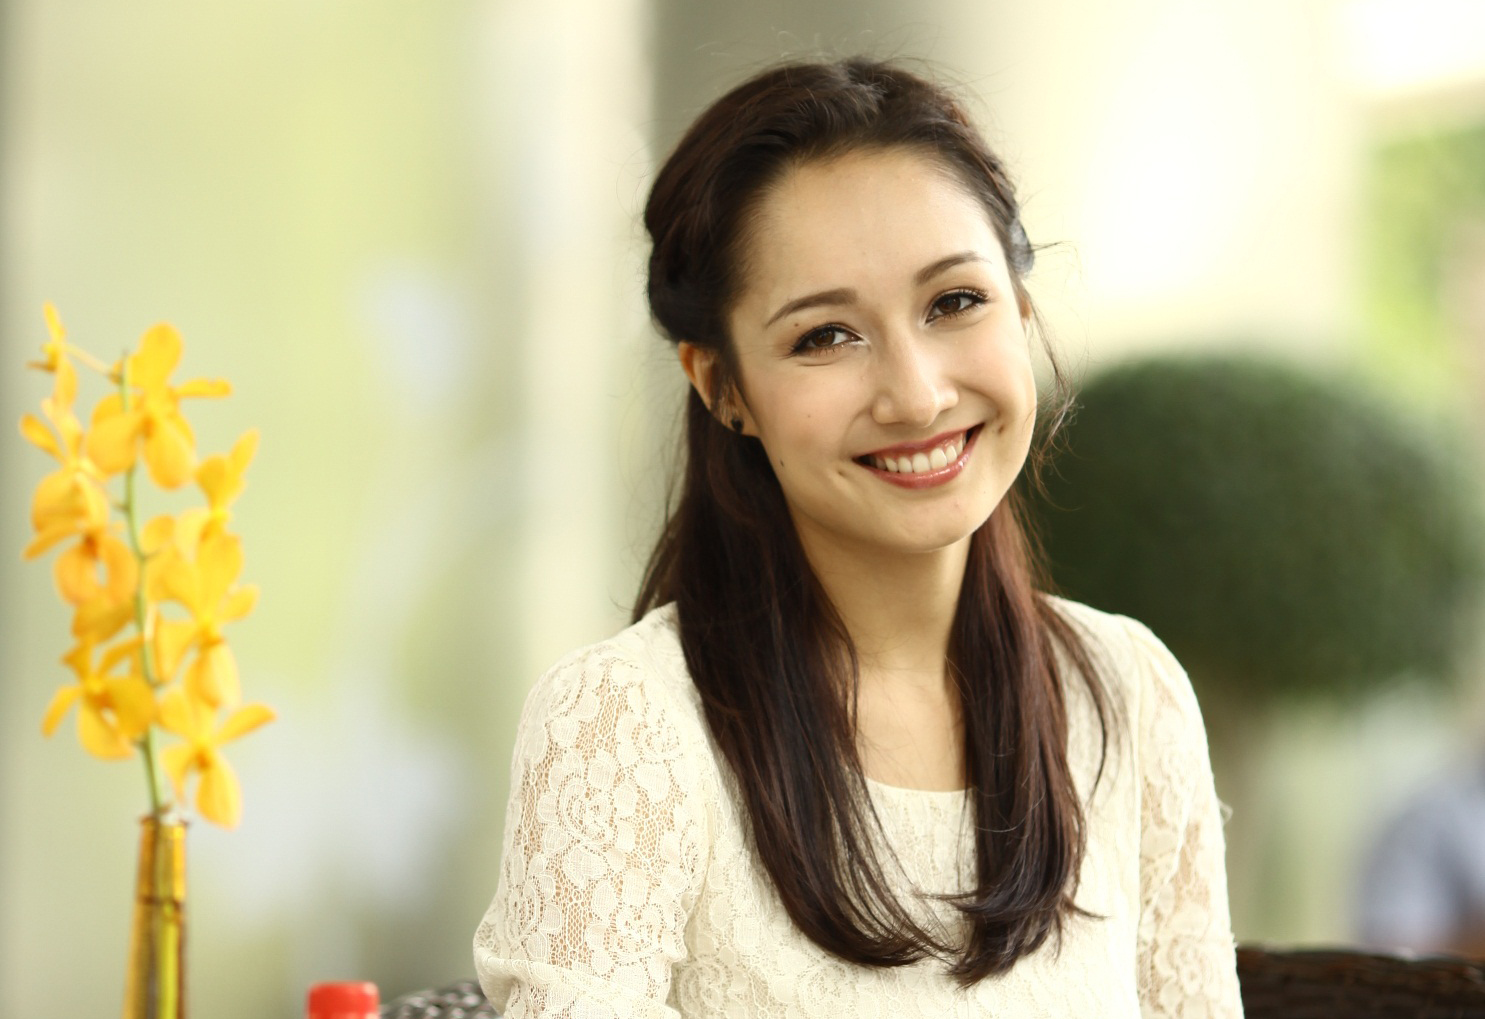 Ca sĩ Anna Trương là đại diện cho cái tên Anna nổi tiếng với vẻ ngoài xinh đẹp và giọng hát truyền cảm